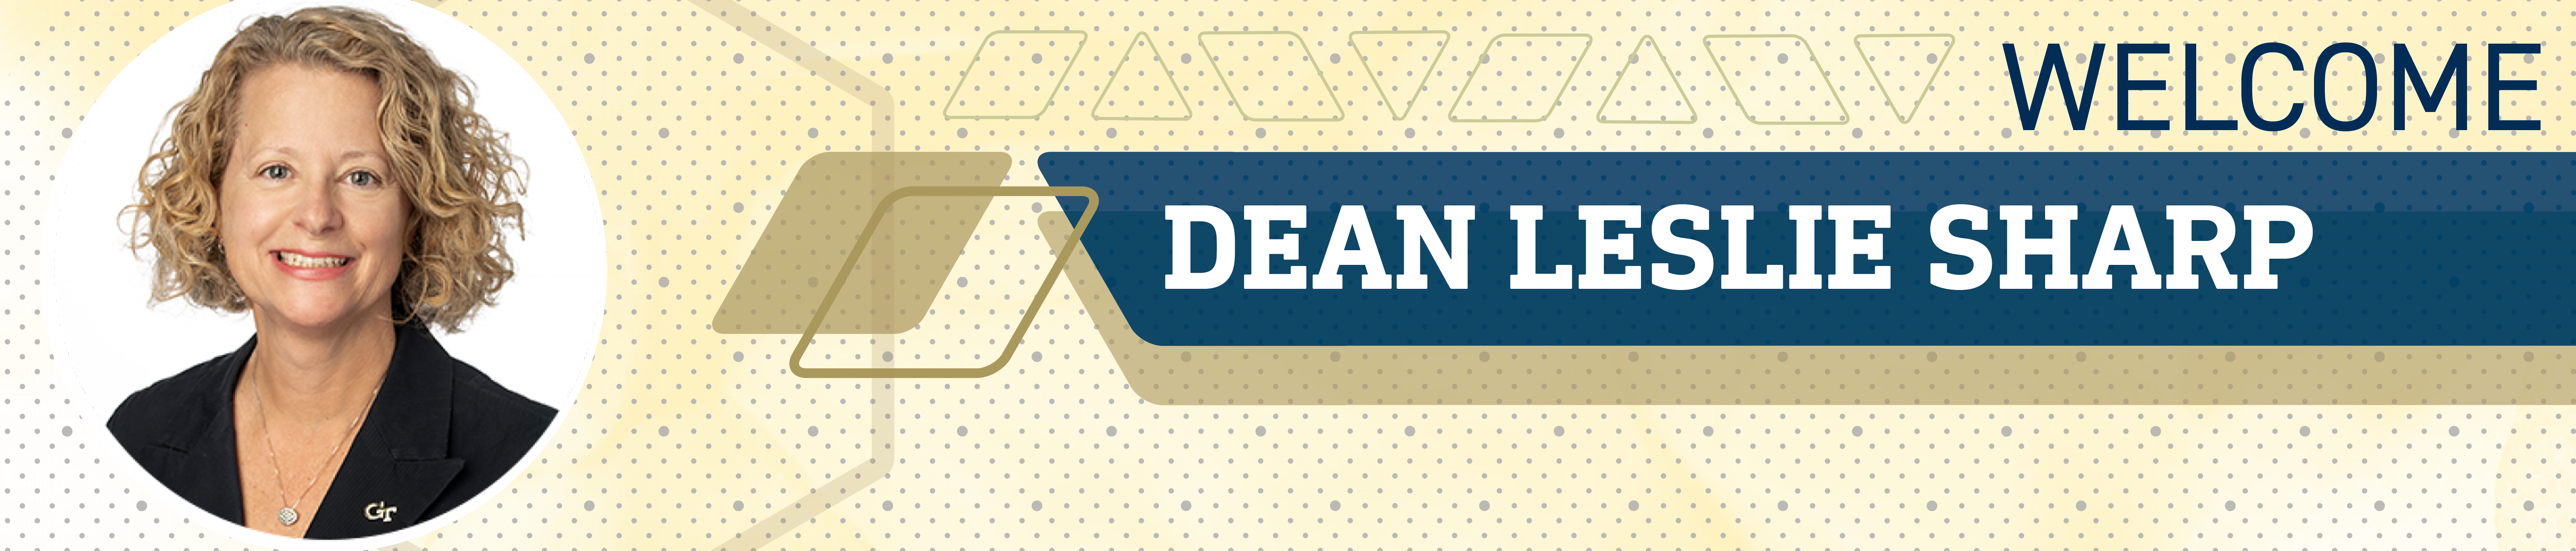 Dean Welcome Header